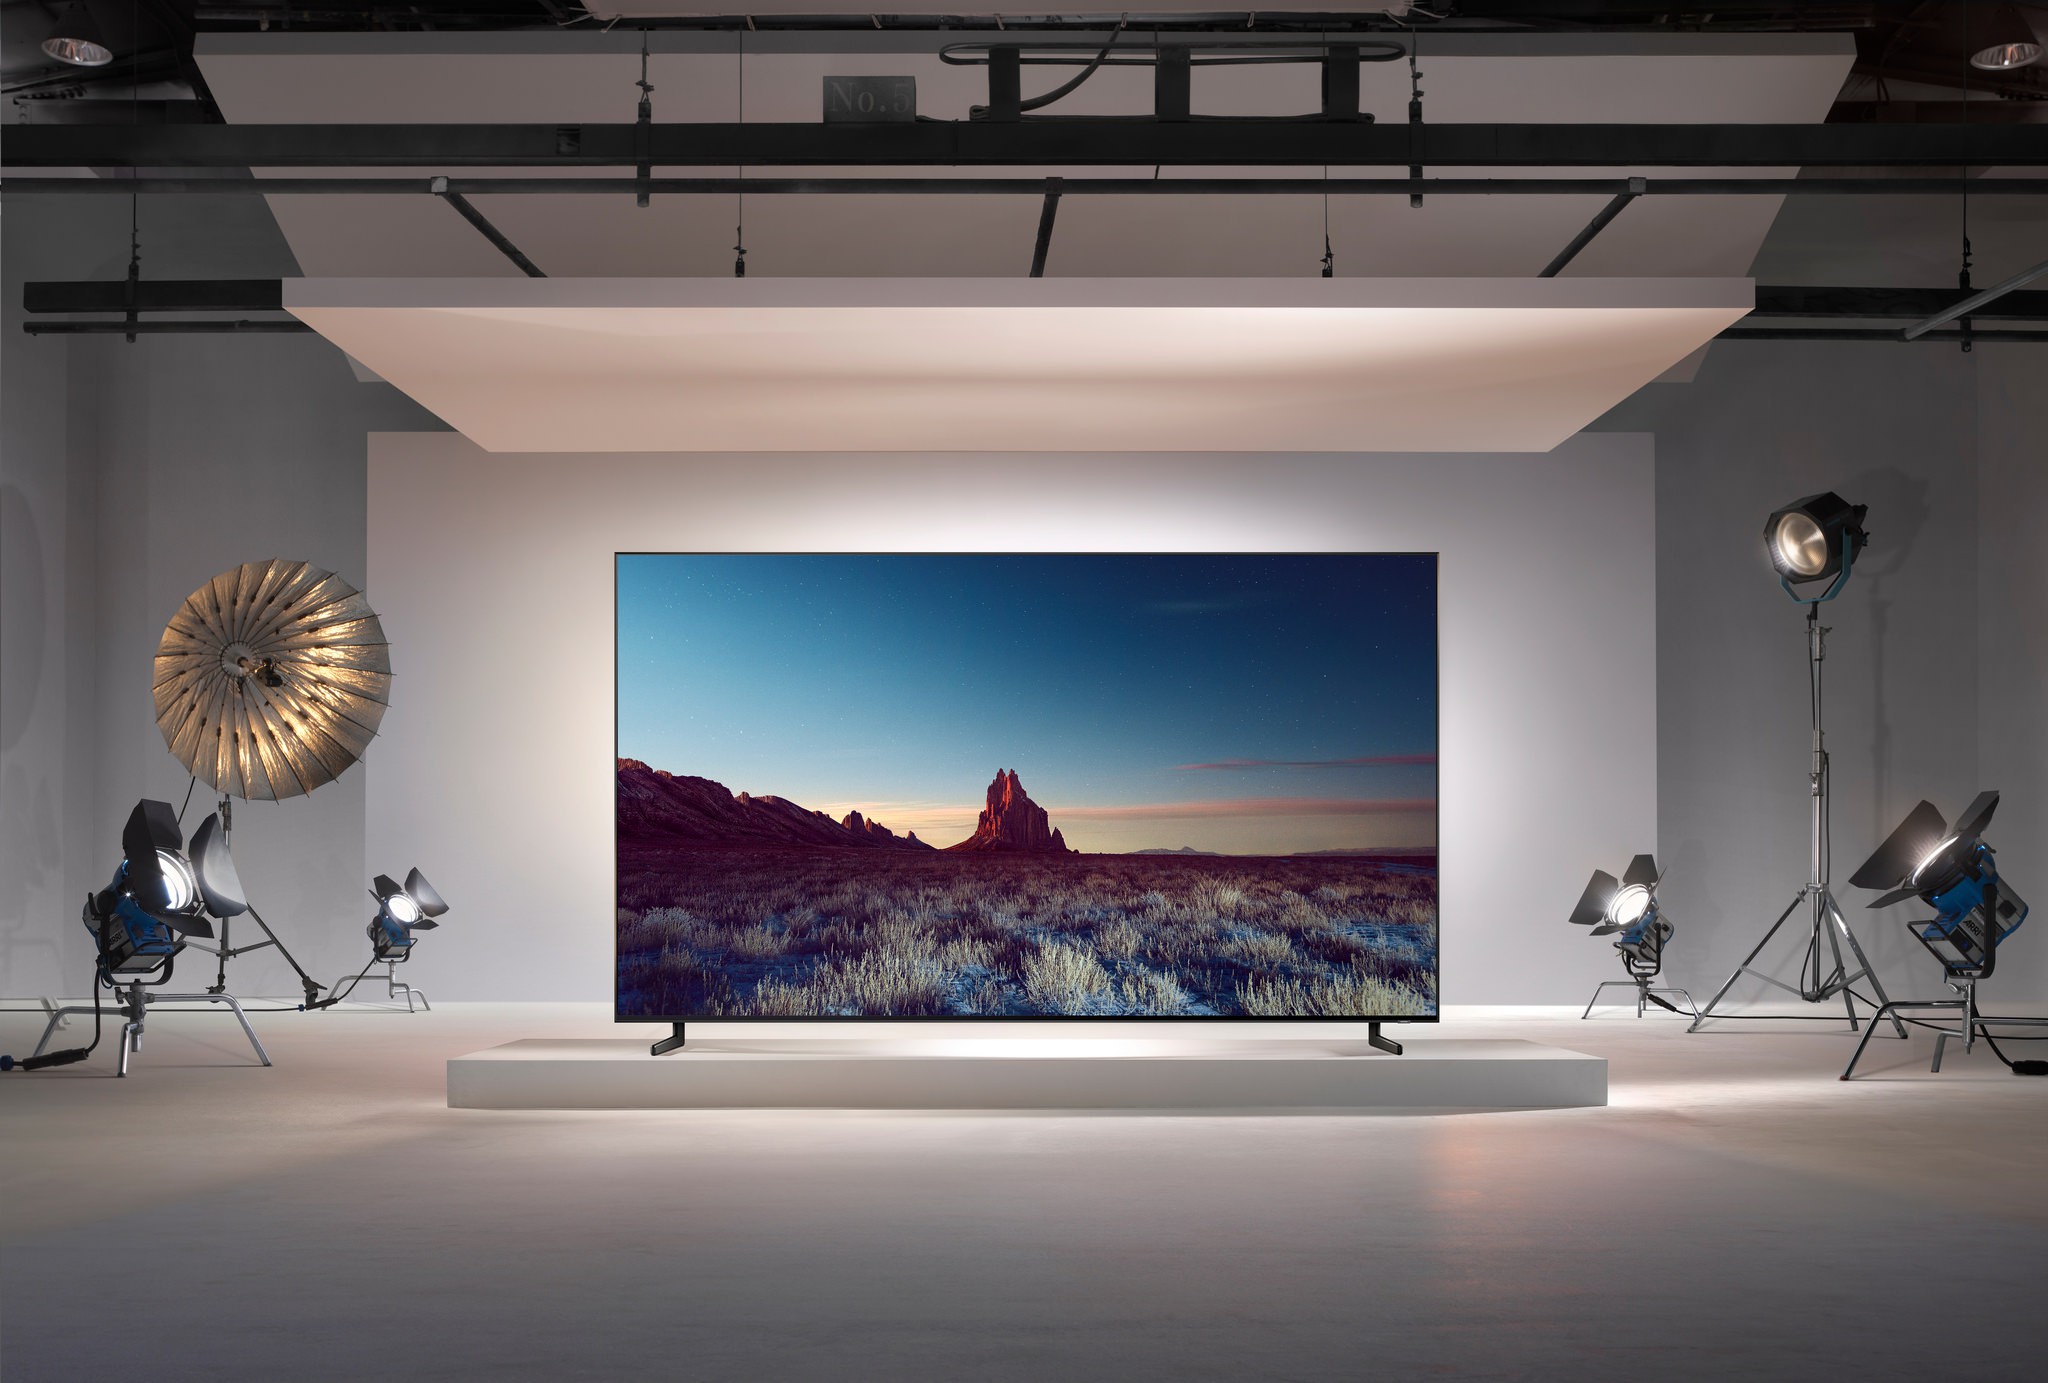 QLED TV od Samsungu